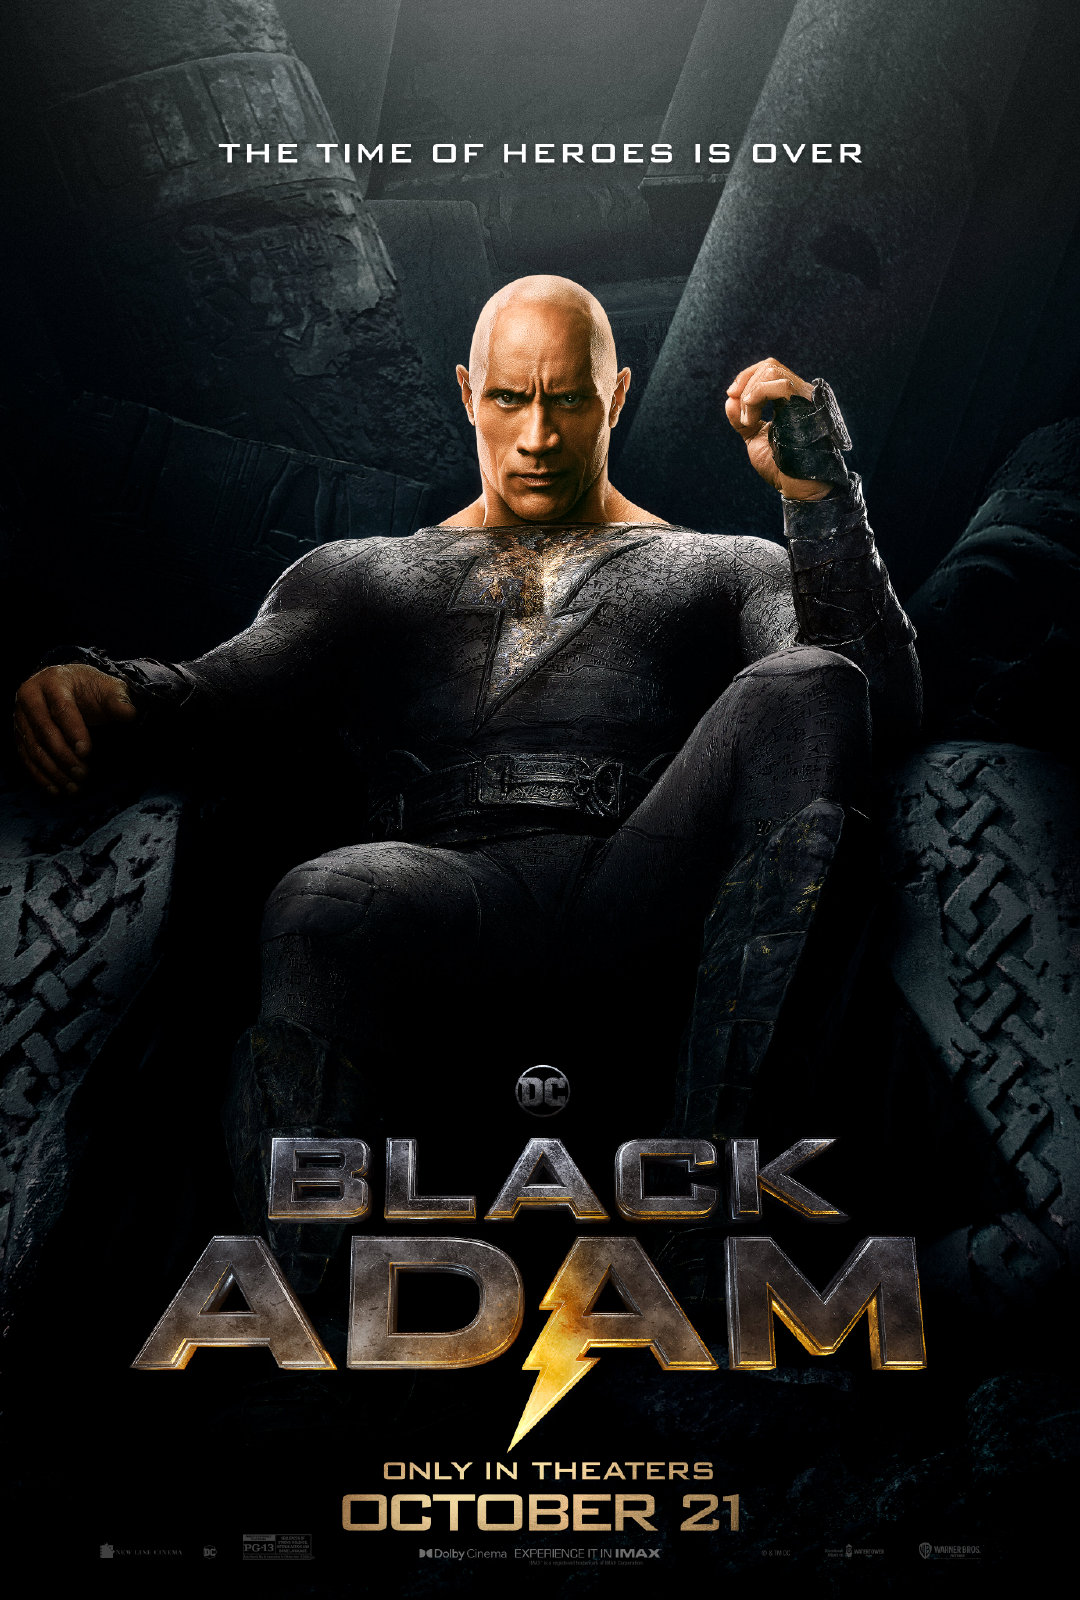 巨石强森主演的DC超级英雄新片《黑亚当》发布新海报，电影将于10月21日登陆北美院线。

《黑亚当》由佐米·希尔拉(《鲨